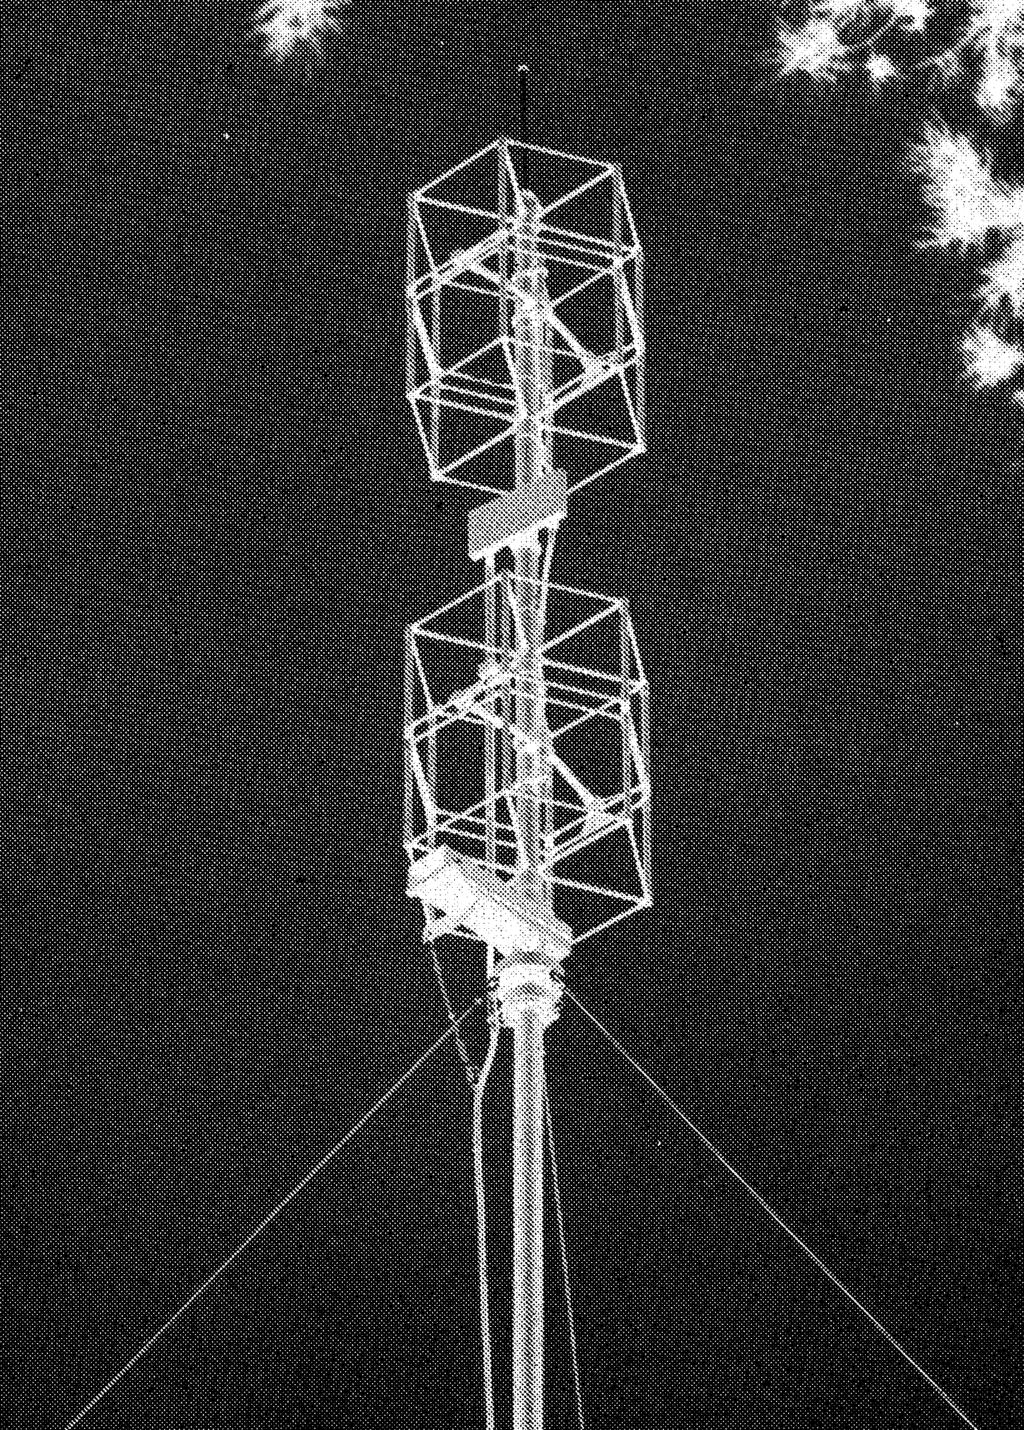 Effektsteg 202 har frekvensområdet 100-156 MHz och 500 W uteffekt på AM samt 2 000 W för FM. Effektstegen var anslutna till var sin diplex som var hopkopplade till en antenn.